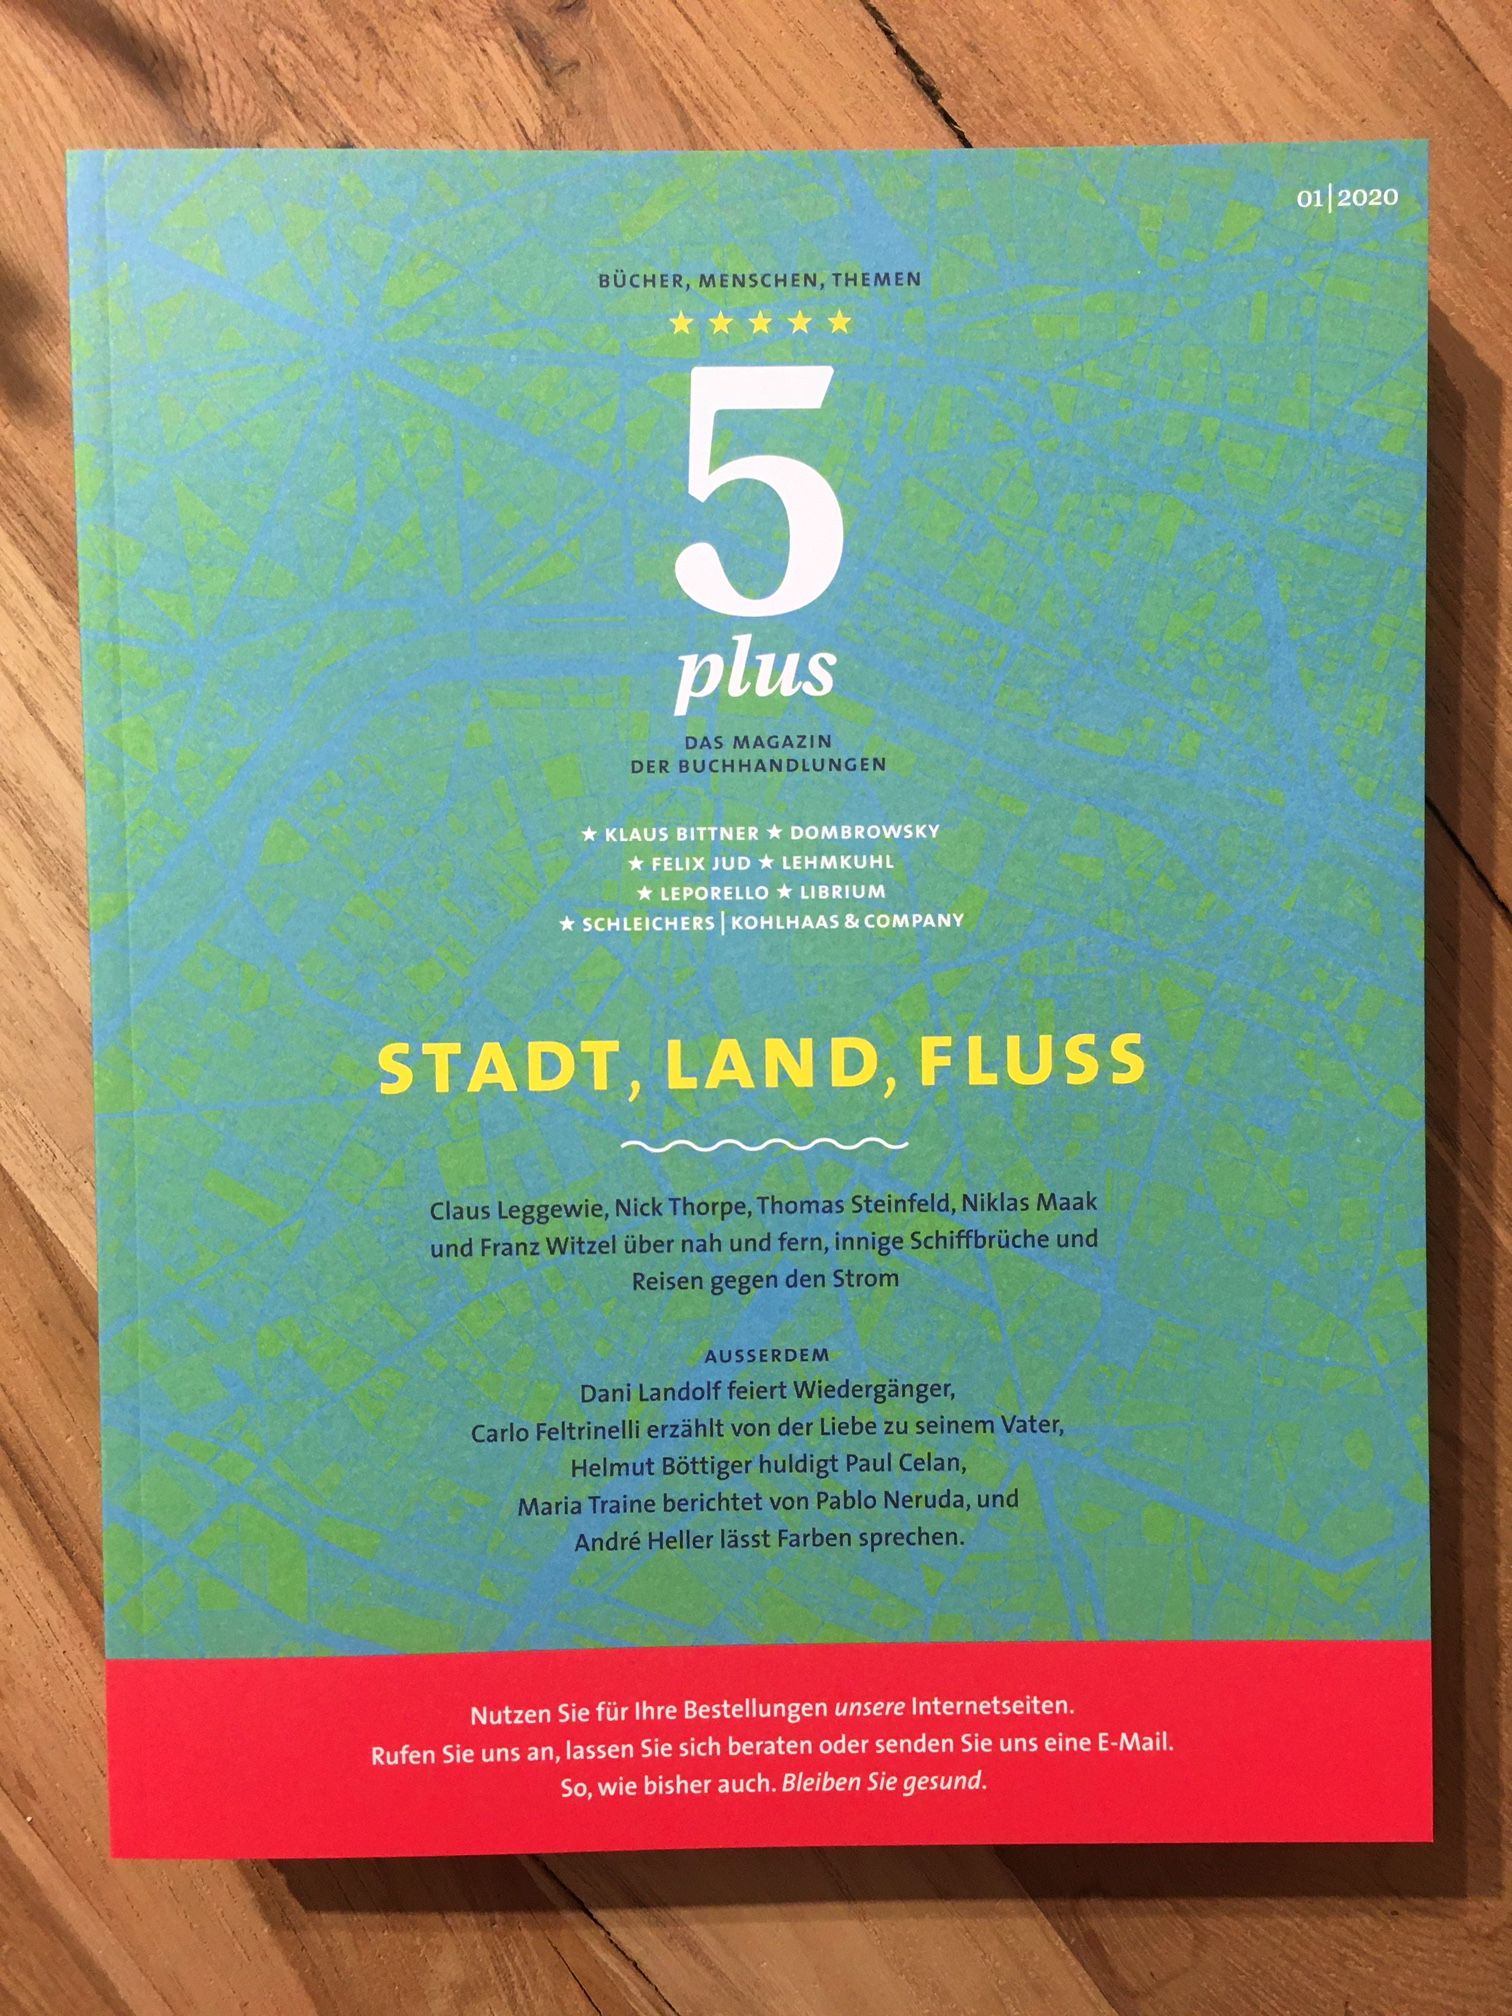 STADT, LAND, FLUSS - Das 5plus Magazin ist eingetroffen!!! 